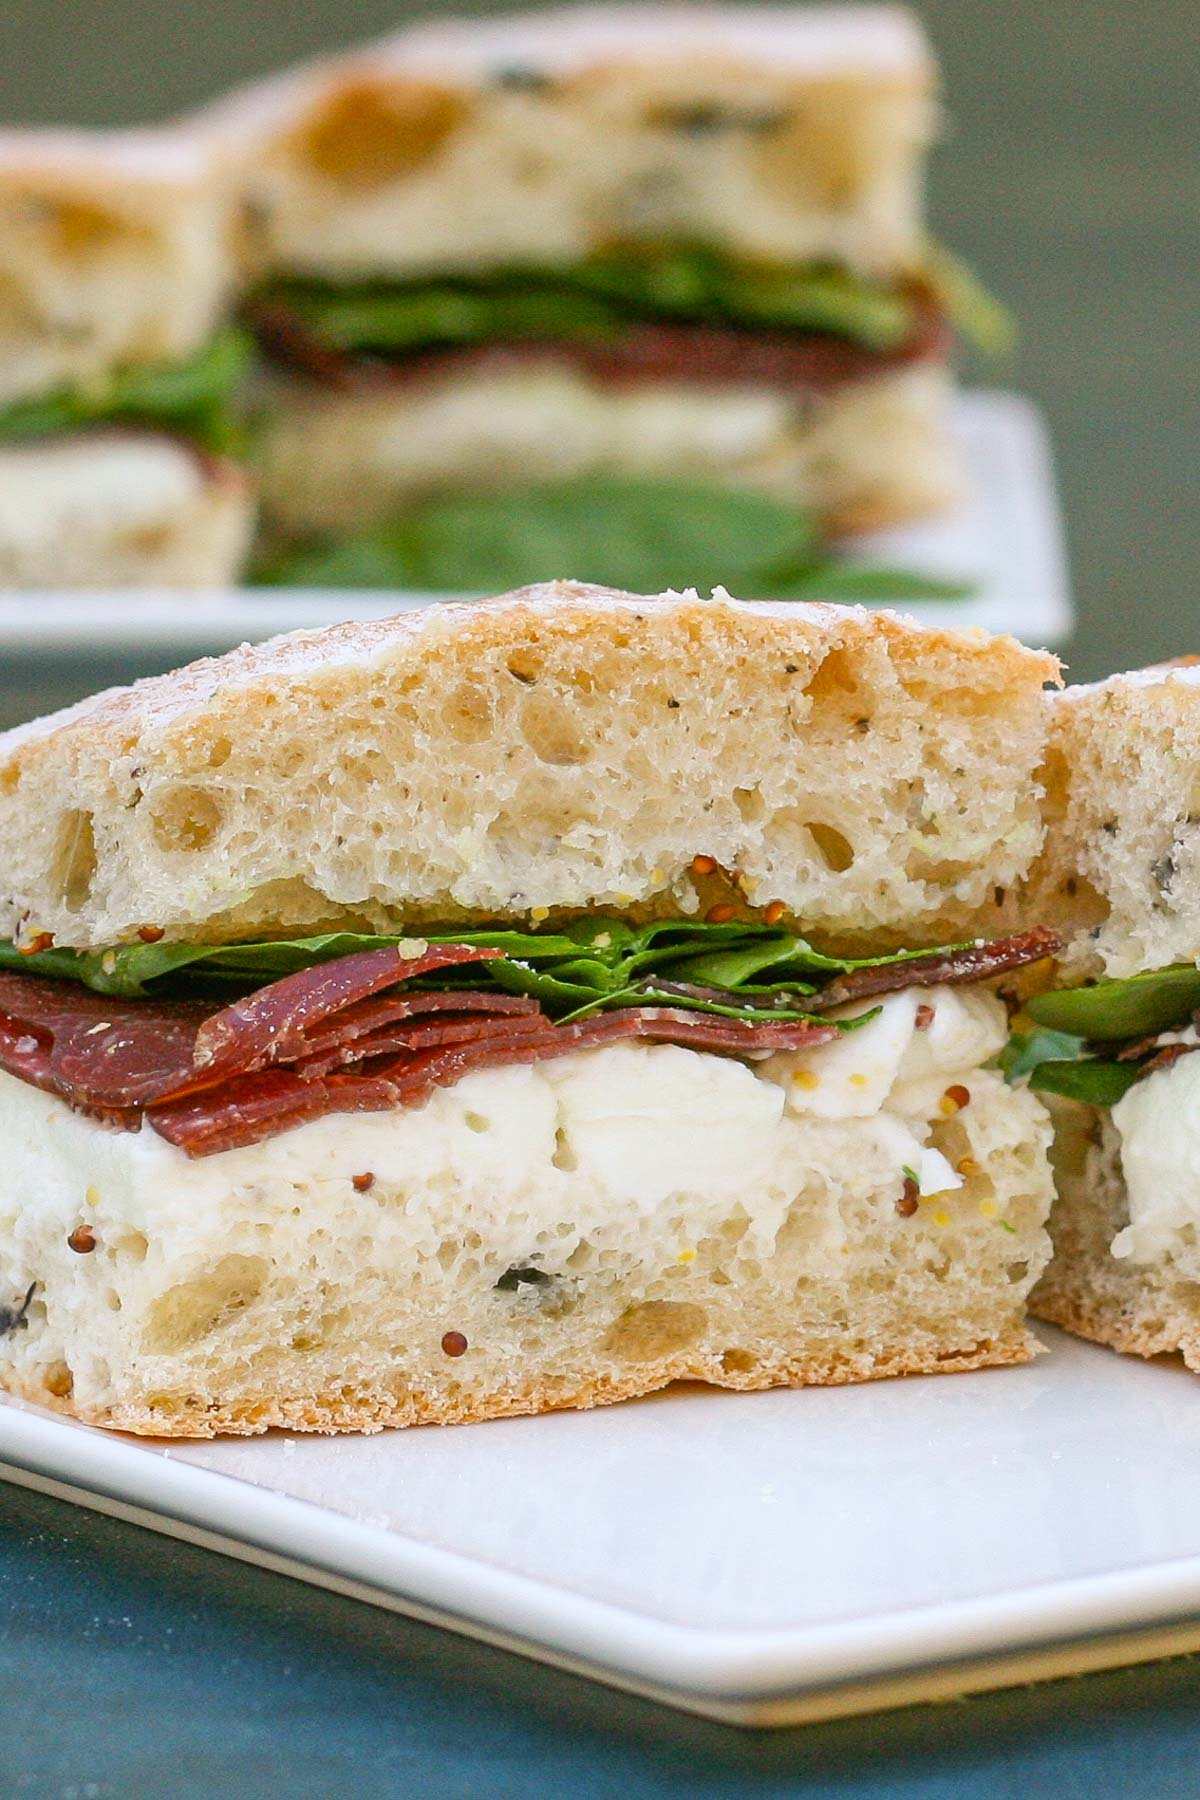 Italian style sandwich on white plate.